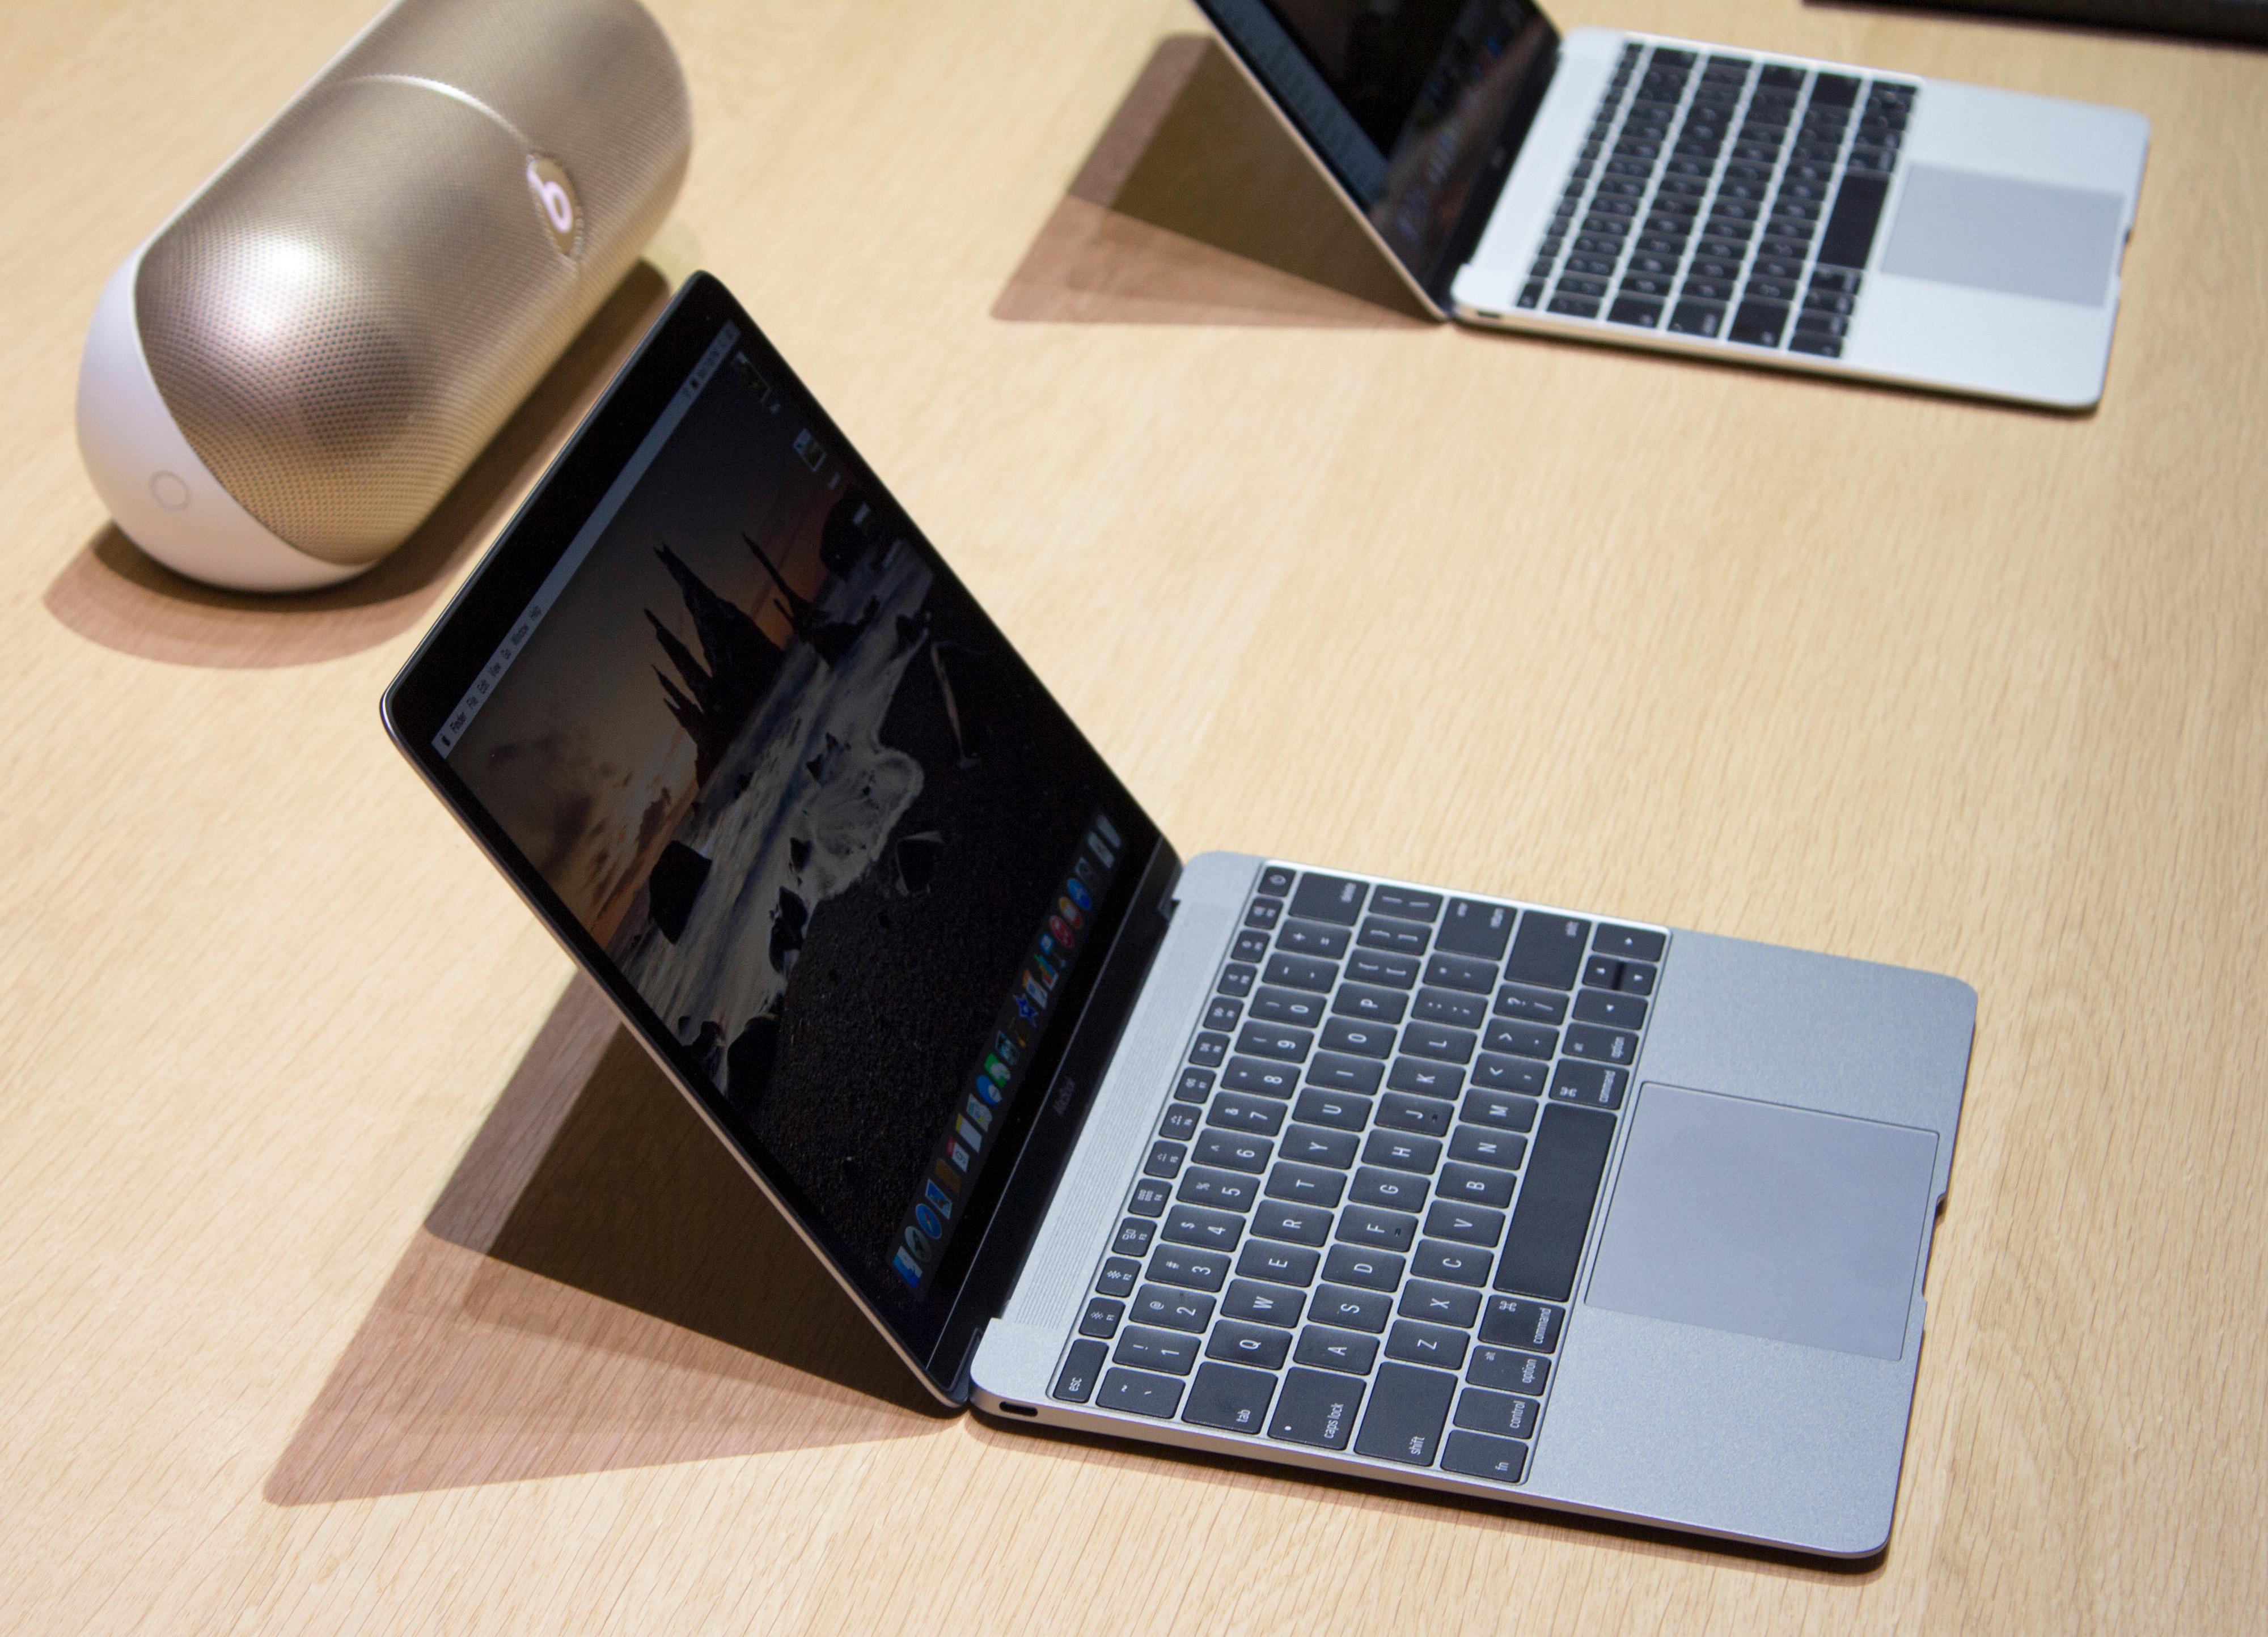 Det er vanskelig å fullt ut sette pris på hvor liten en ny MacBook er uten å løfte den selv. Foto: Finn Jarle Kvalheim, Tek.no